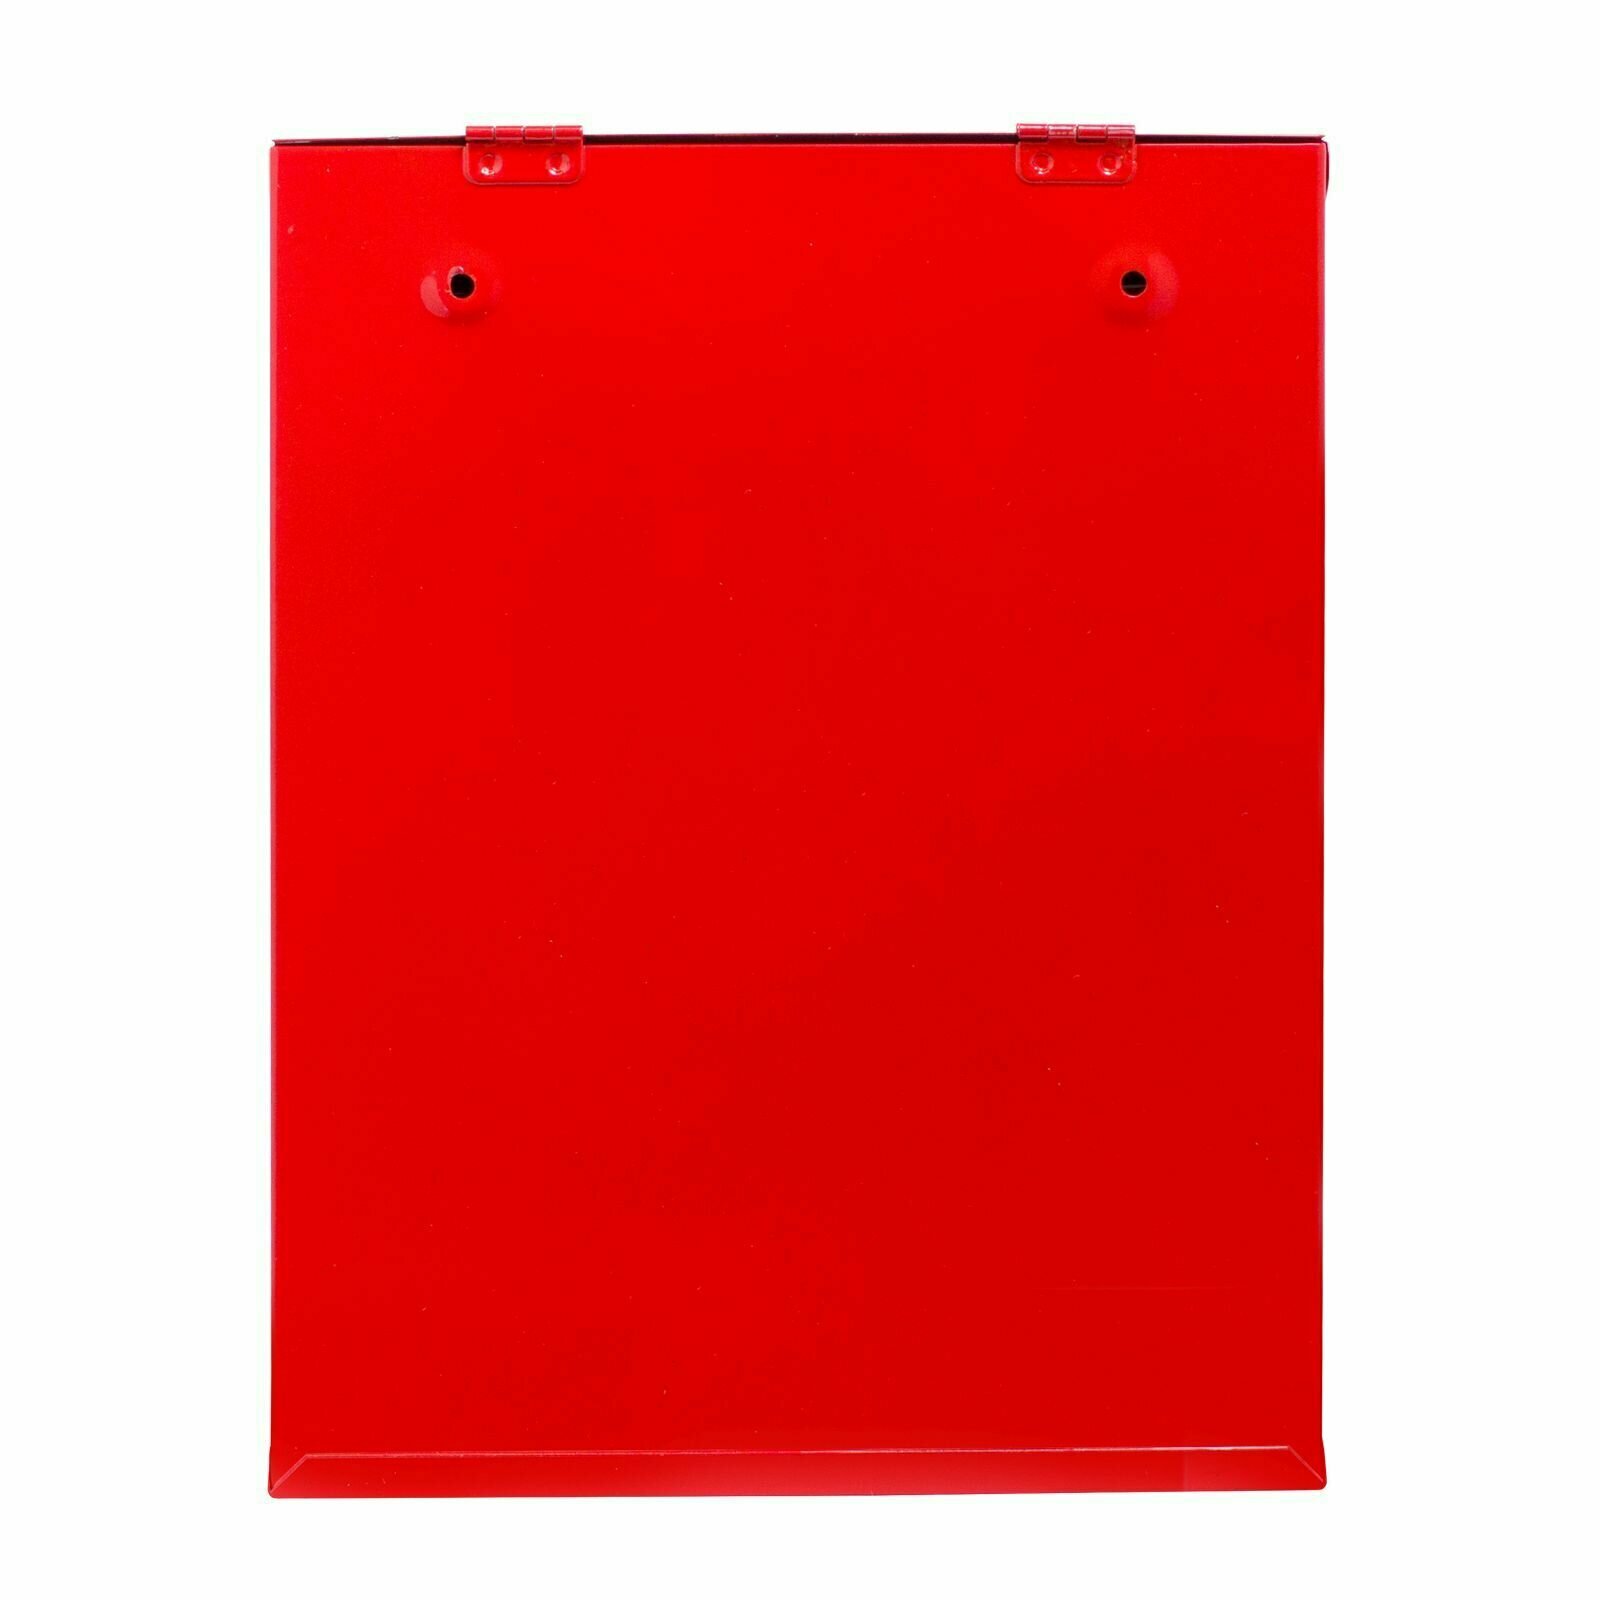 Почтовый ящик с замком уличный металлический для дома аллюр №3010 красный